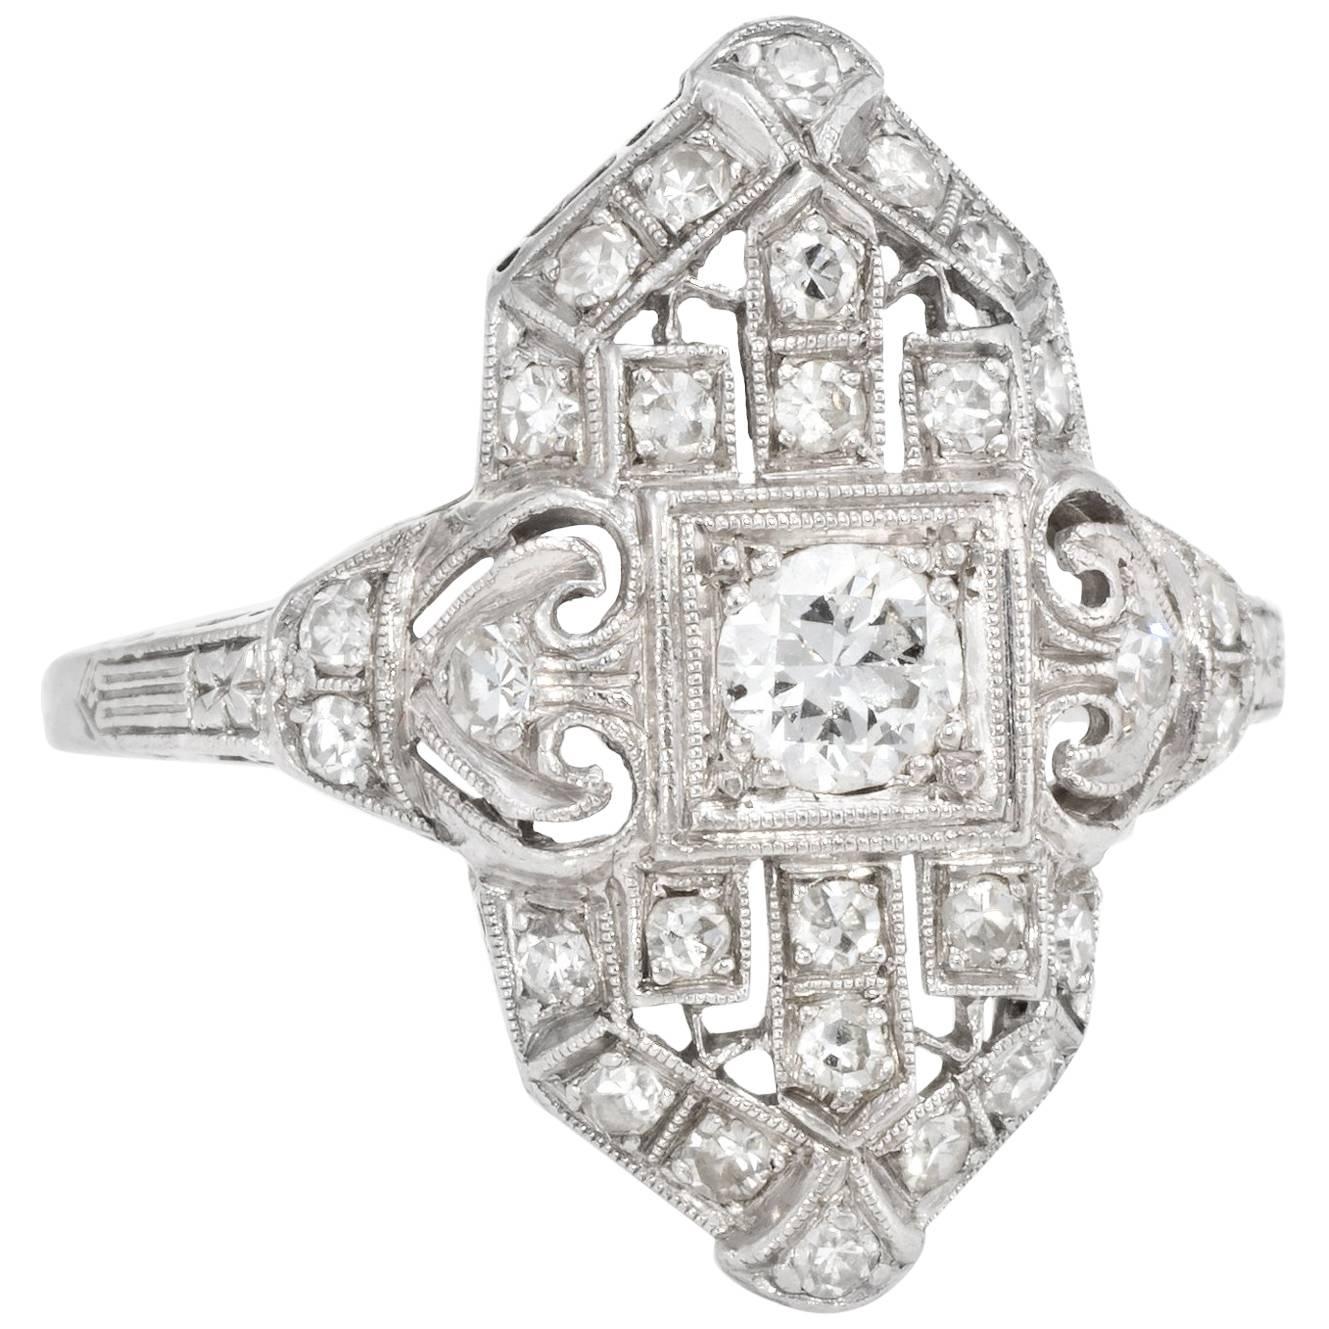 Art Deco Diamond Platinum Cocktail Ring